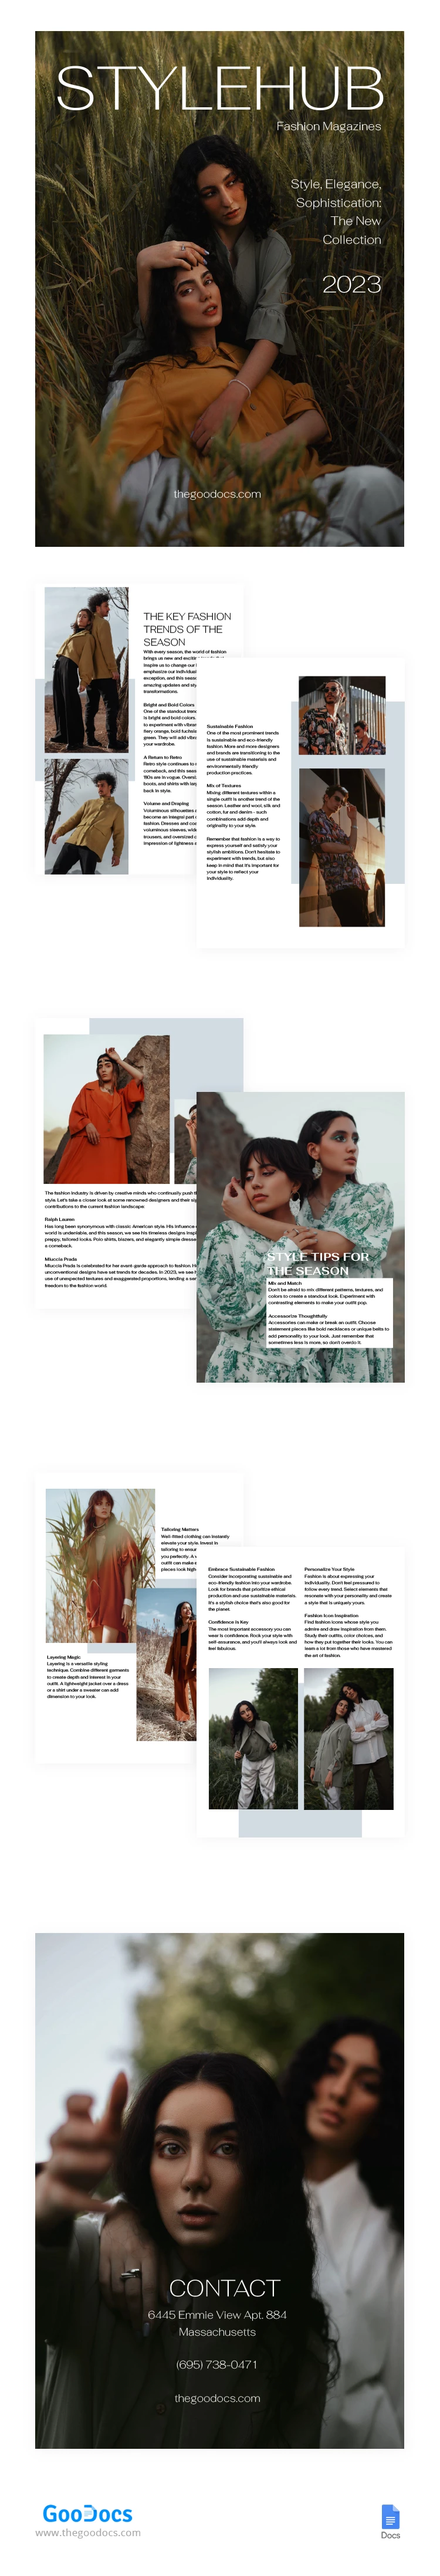 Revista de moda rústica retro - free Google Docs Template - 10067261